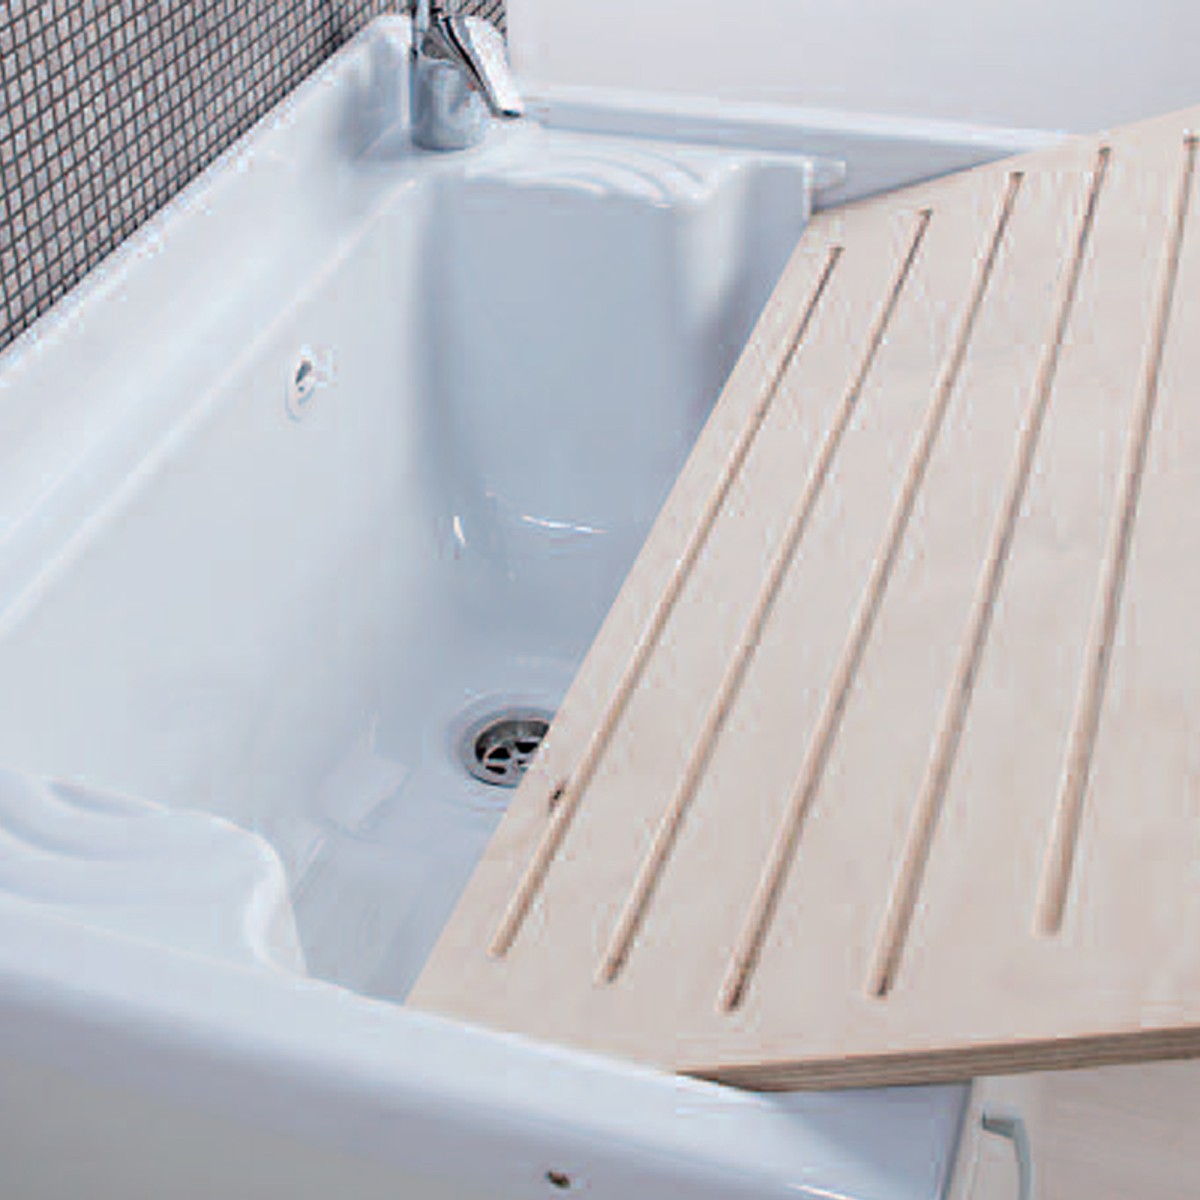 Mobile lavatoio Olimpo da esterno bianco con vasca, asse e kit scarico